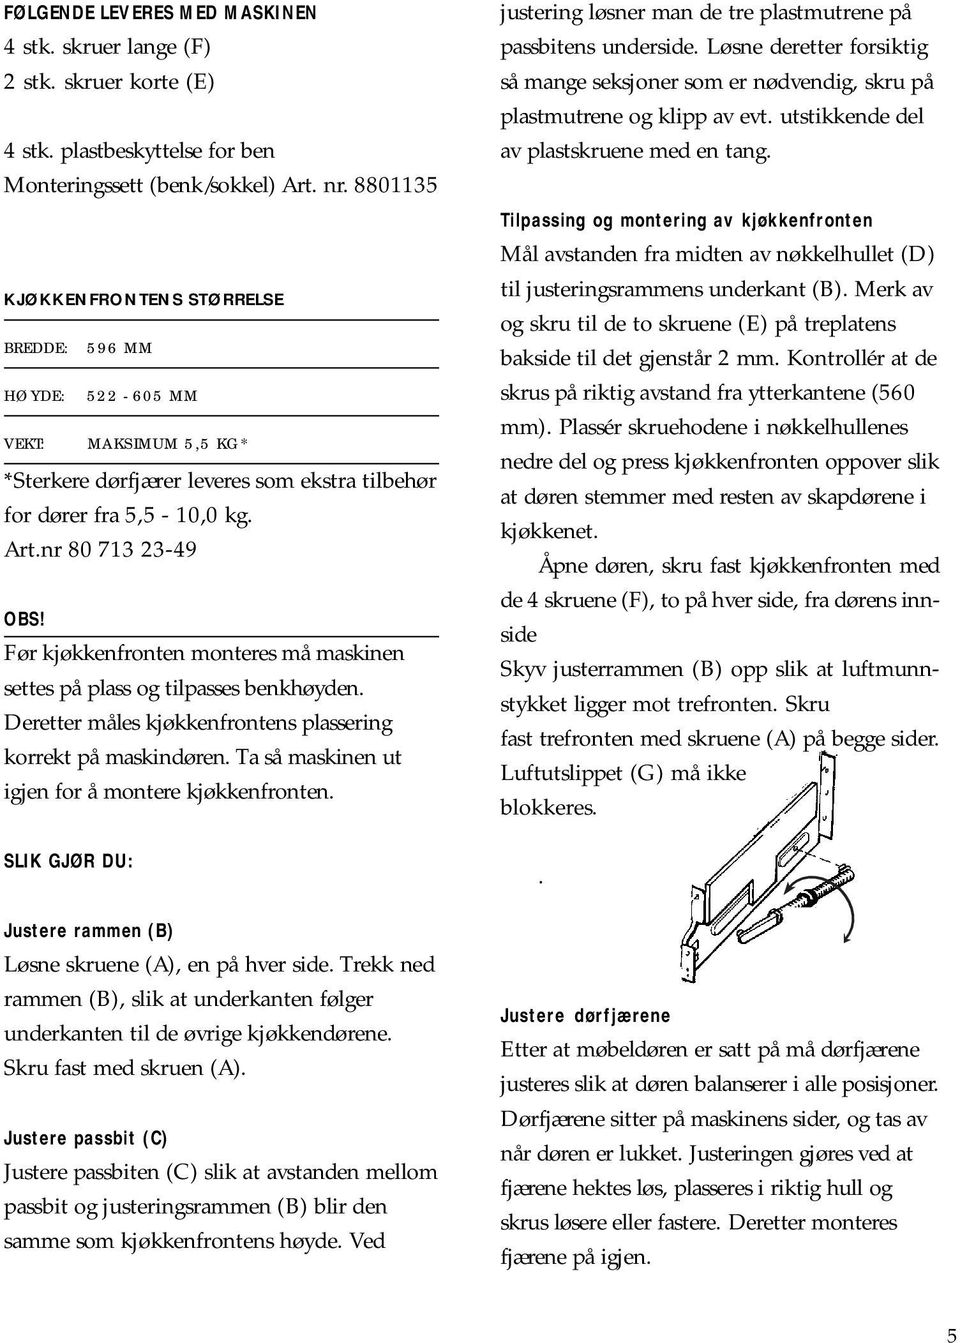 Installasjonsanvisning for Asko oppvaskmaskin - PDF Free Download